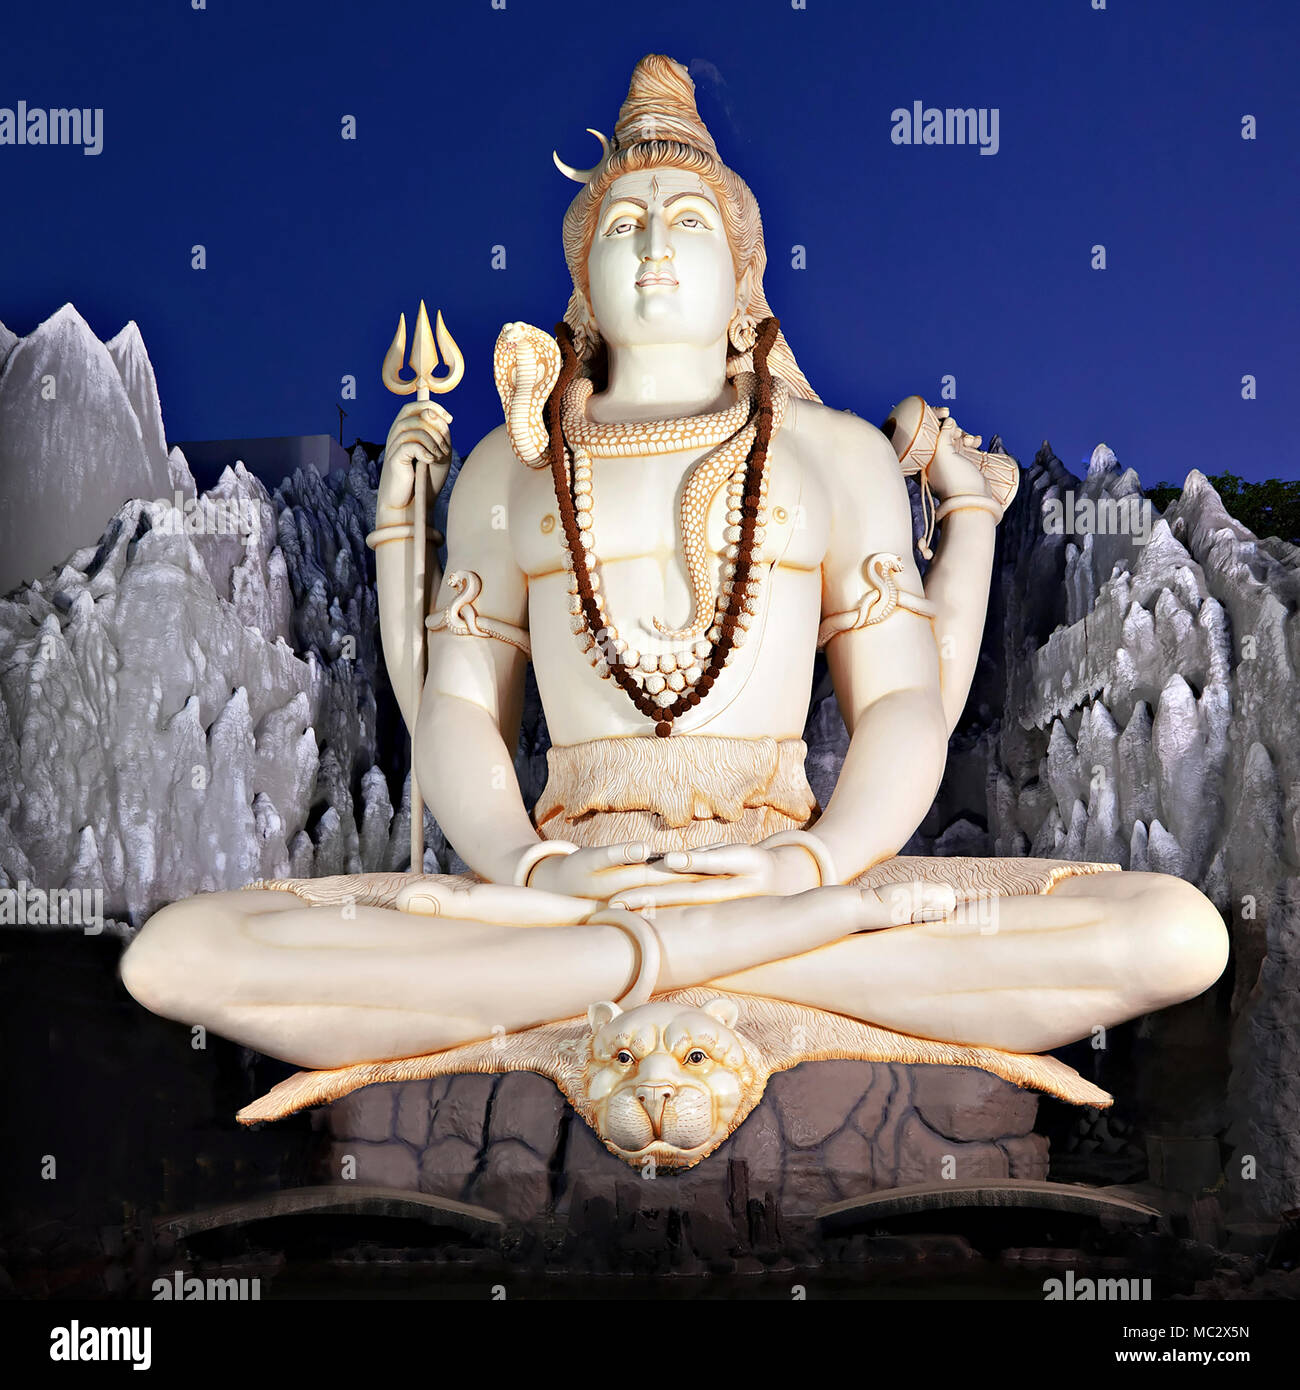 Lord Shiva big Statue sitzt im Lotussitz mit Dreizack in Murugeshpalya Tempel in Bangalore, Indien. Diese Shiva Statue ist am höchsten in der Welt. Stockfoto